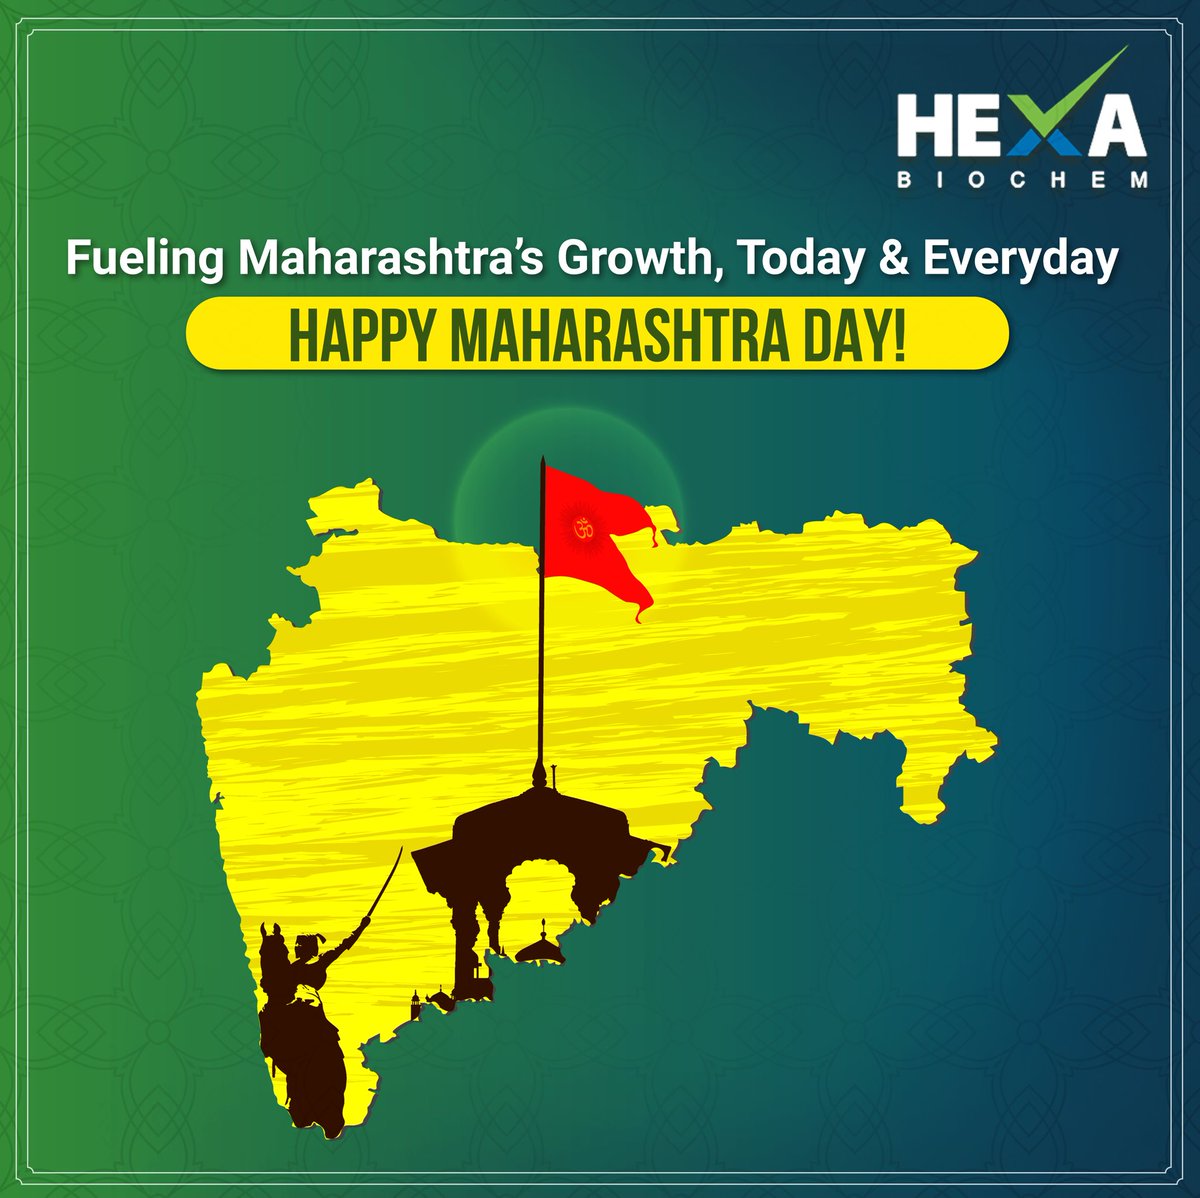 Happy Maharashtra Day from Hexa! 

Celebrating the spirit of innovation, progress, and prosperity in the land of diversity. 🎉🌟 

#MaharashtraDay #HexaChemicals #CelebrateProgress